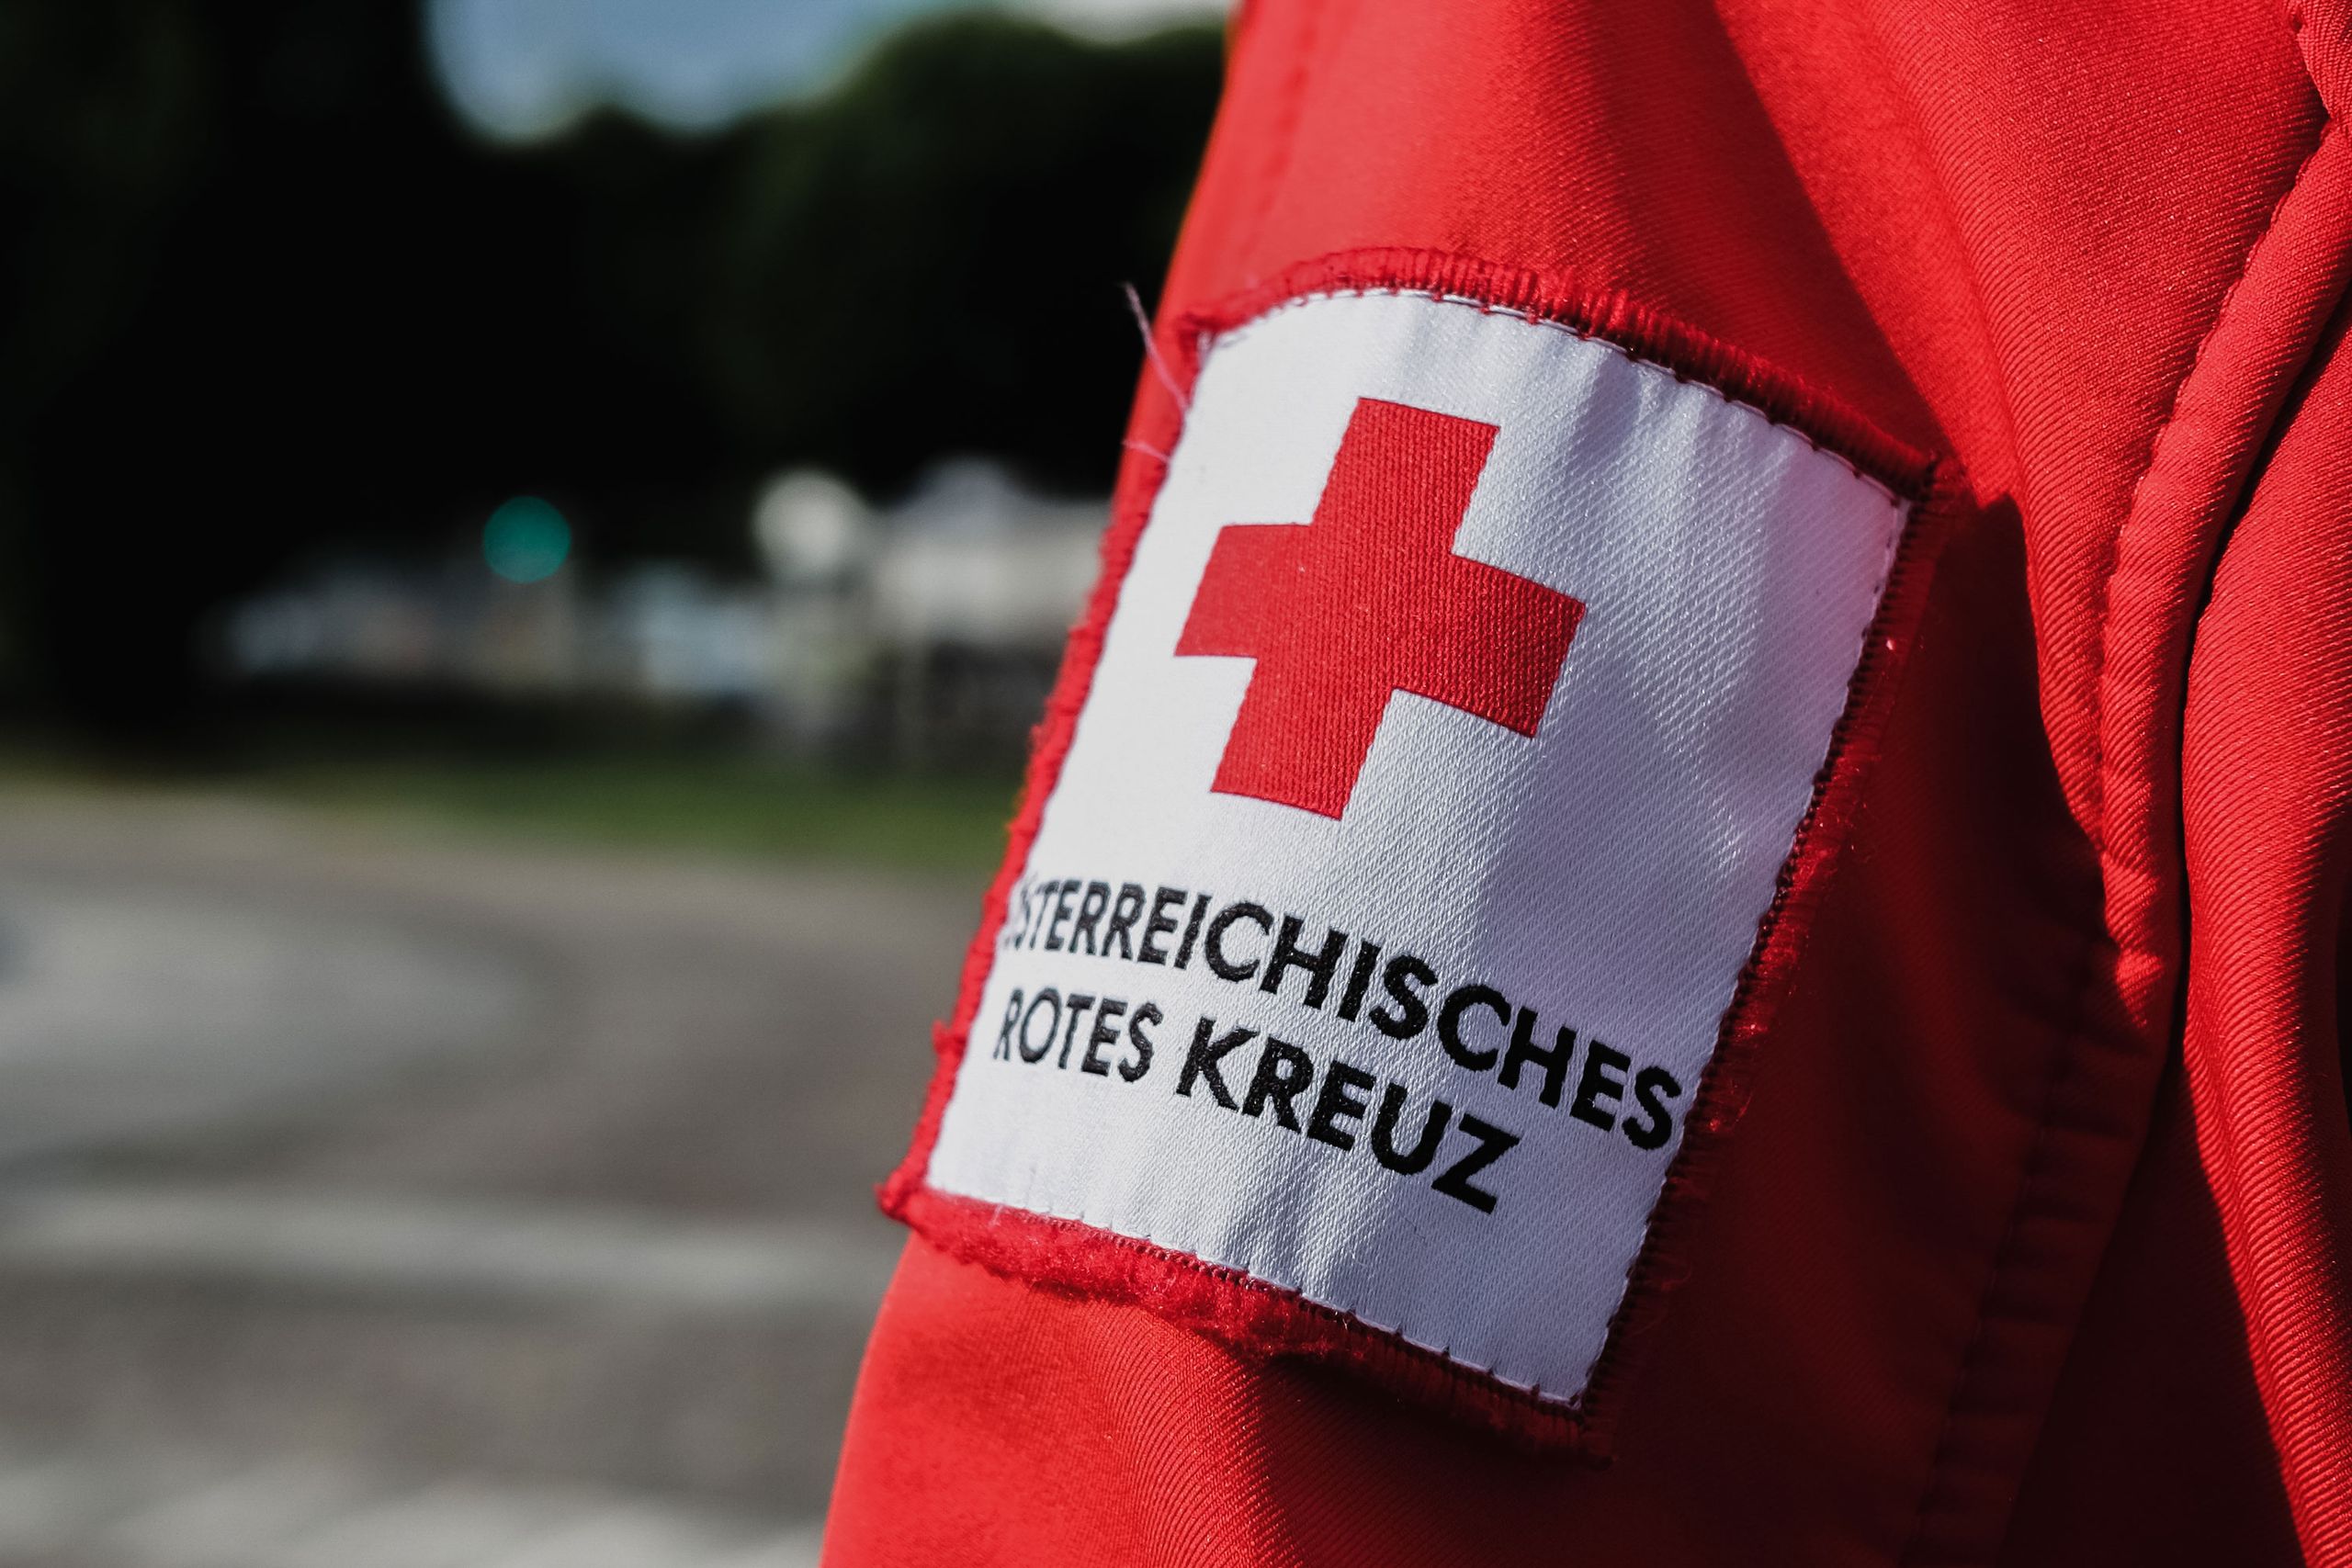 Rotes Kreuz Kampagne